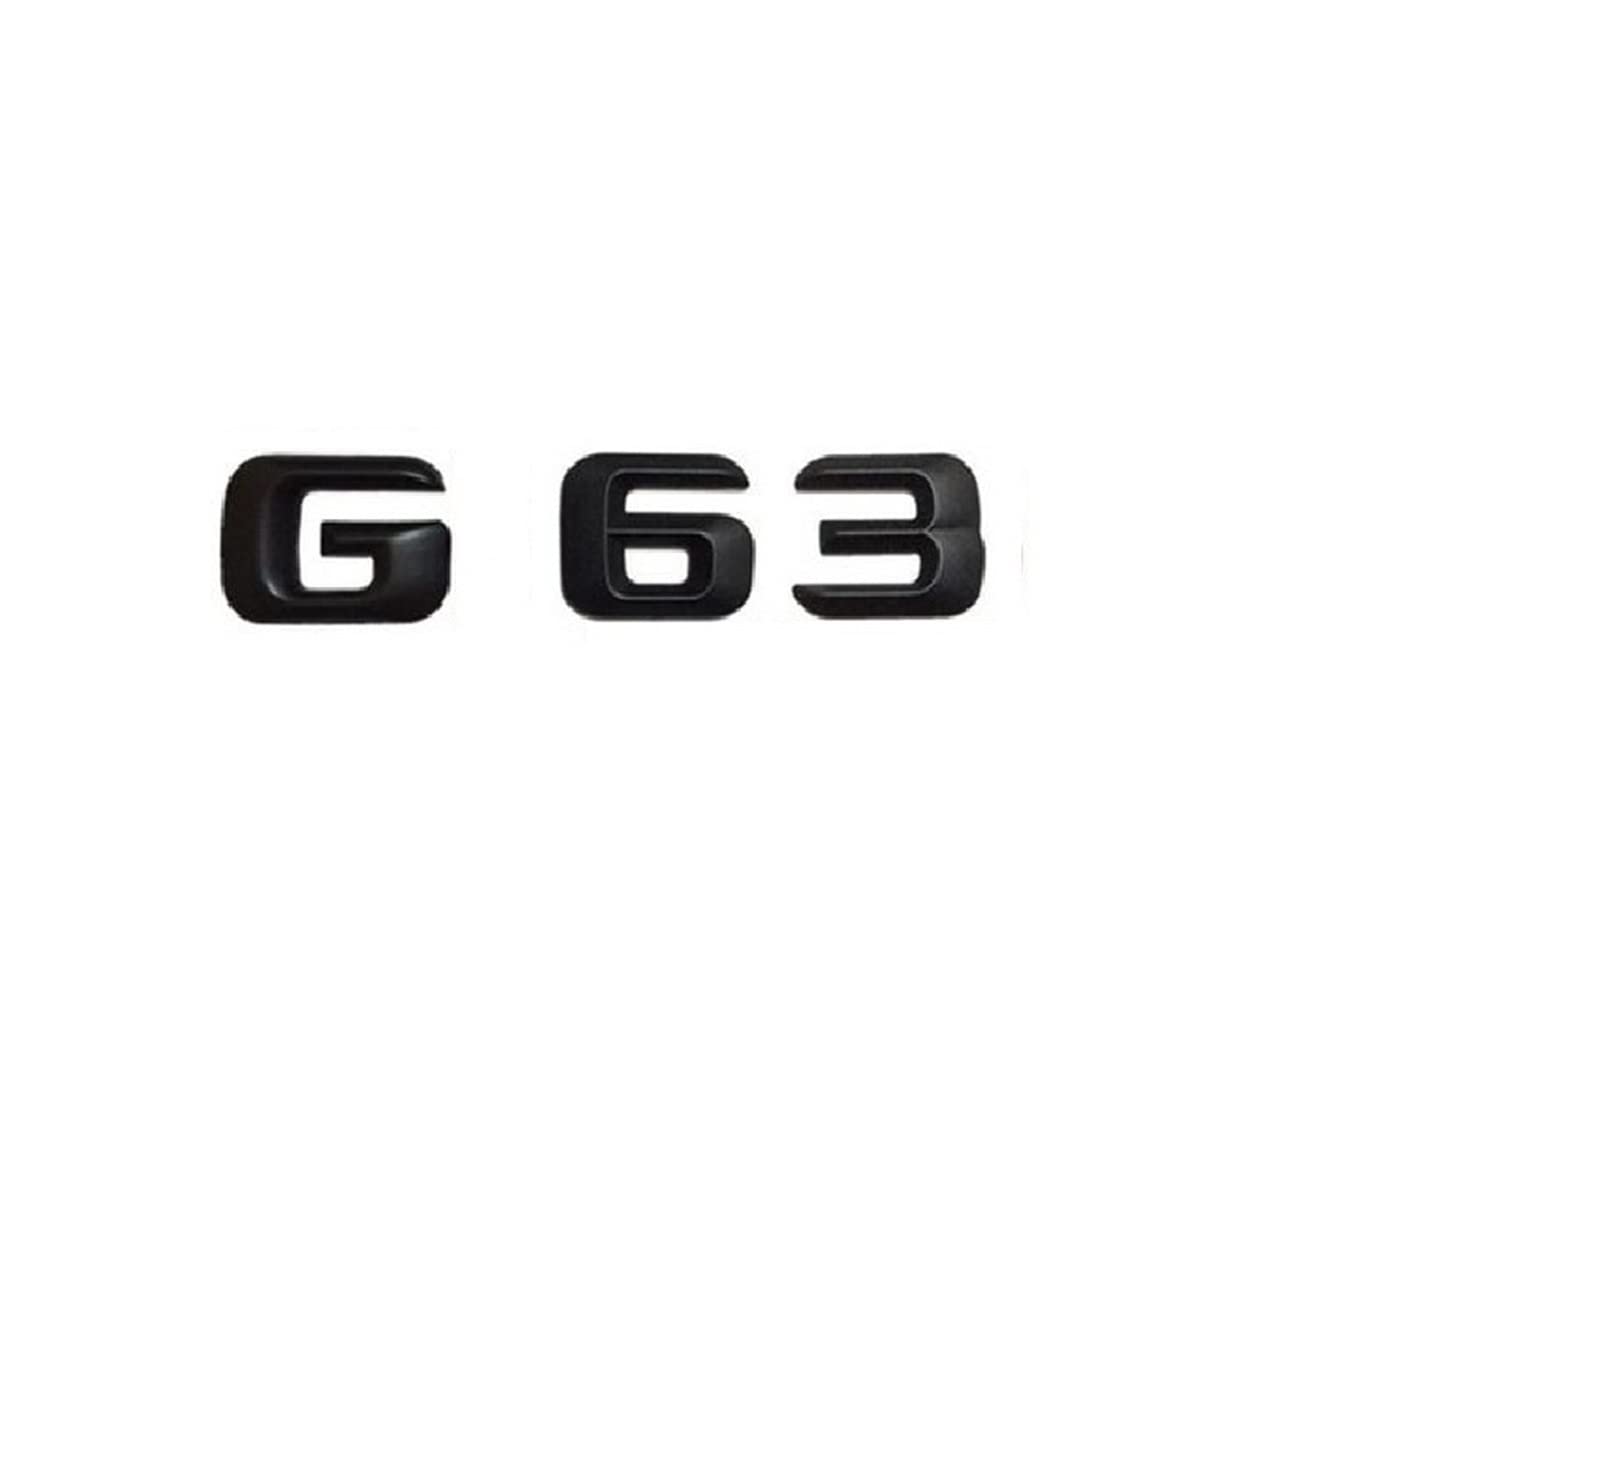 BMINO 1 Satz mattschwarzer ABS-Kofferraum-Hecknummer-Buchstaben-Wörter-Abzeichen-Emblem-Aufkleber-Aufkleber, kompatibel mit Mercedes Benz G63 AMG Logo-Aufkleber von BMINO